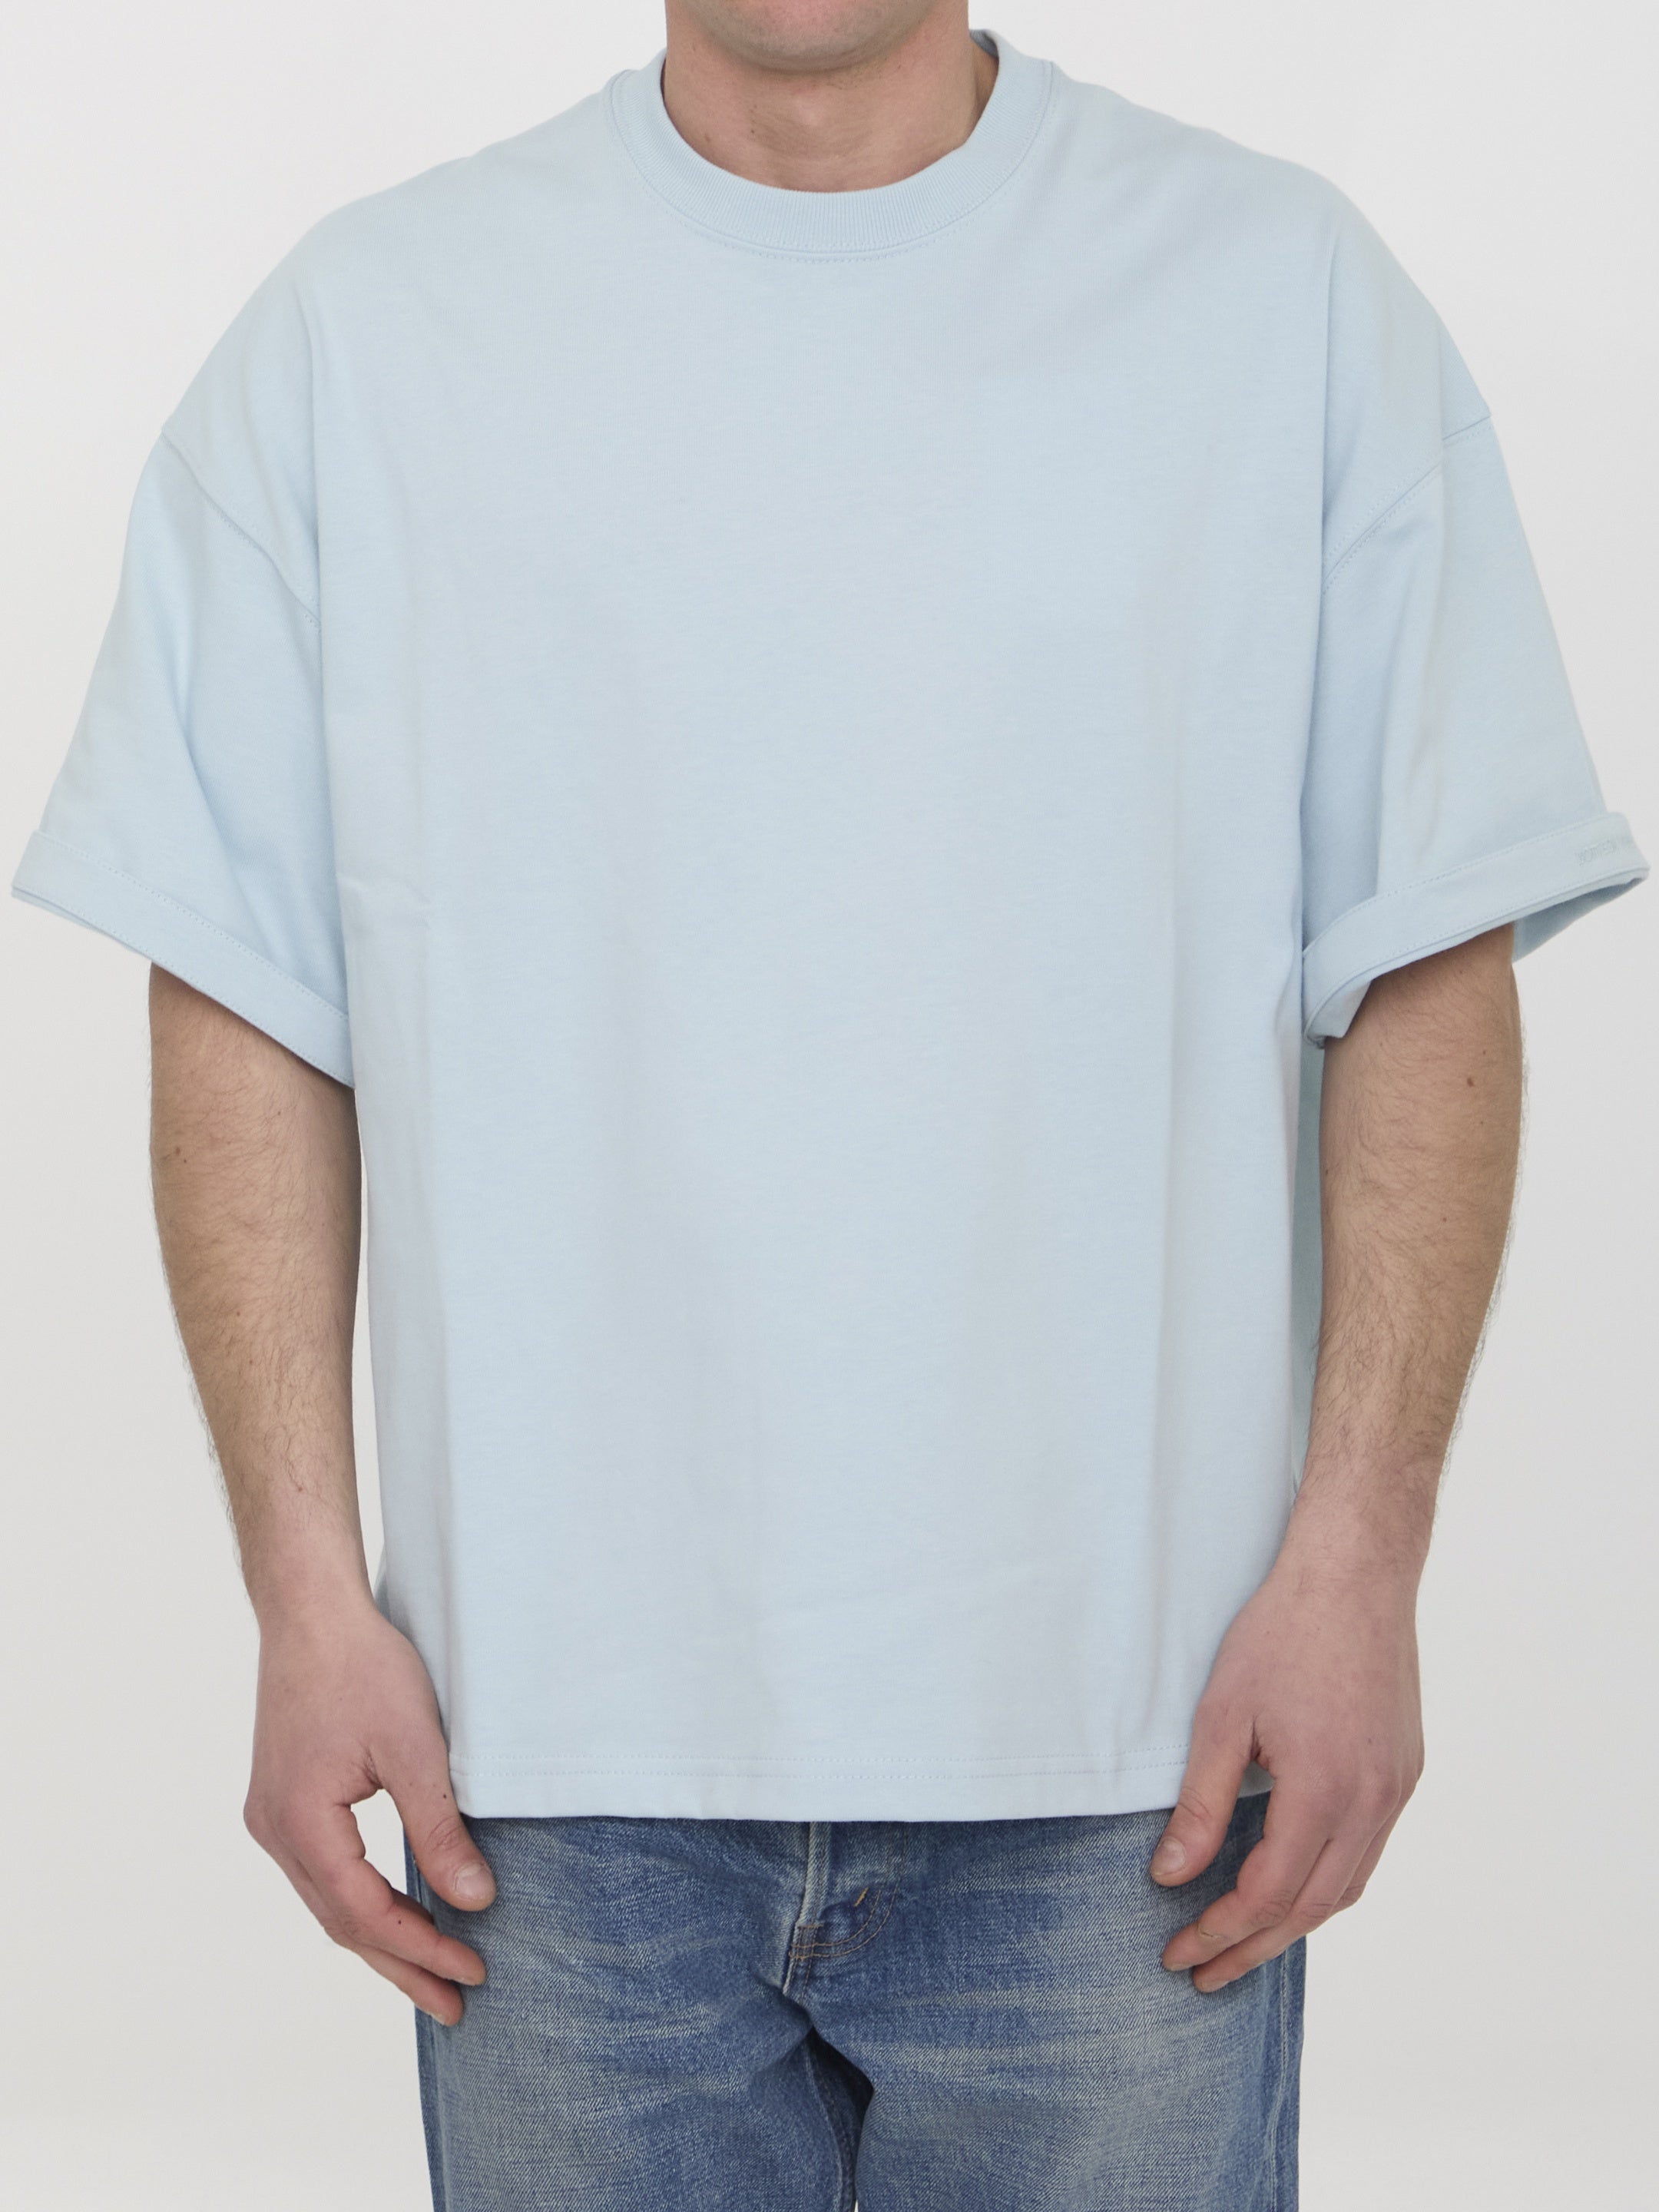 BOTTEGA-VENETA-OUTLET-SALE-Cotton-t-shirt-Shirts-S-LIGHT-BLUE-ARCHIVE-COLLECTION.jpg